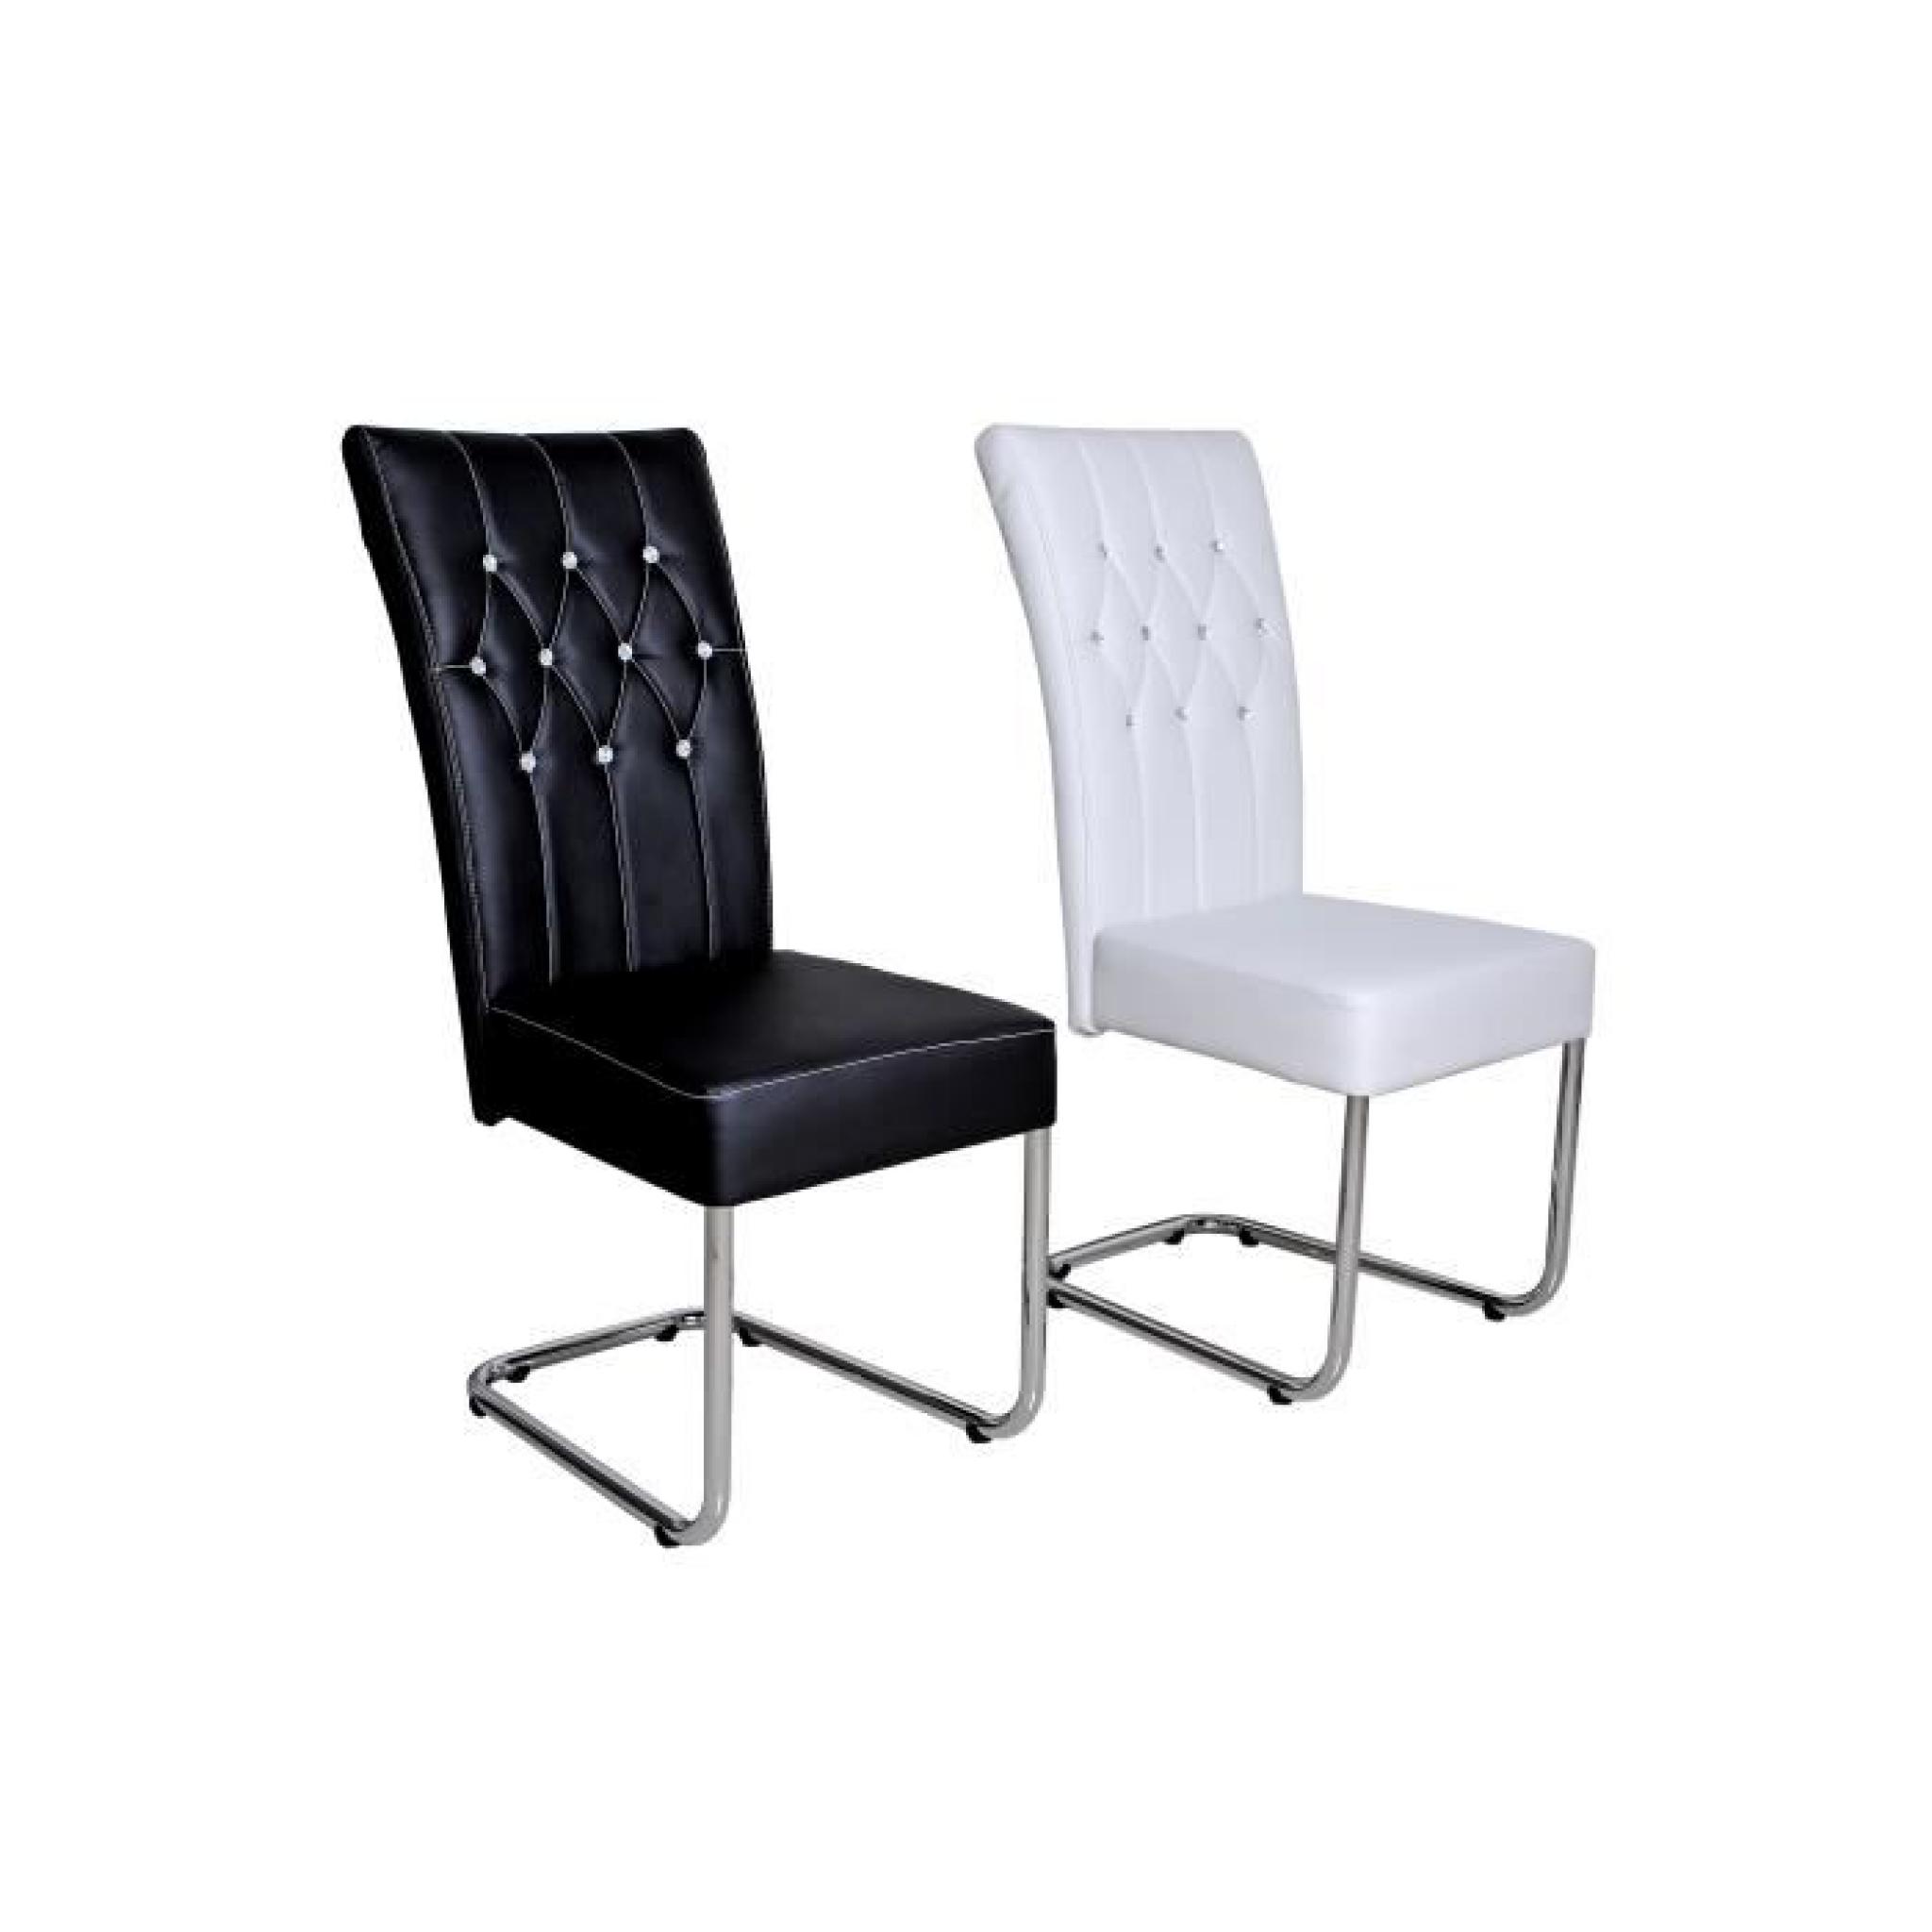 Chaise design coloris noir avec strass pas cher